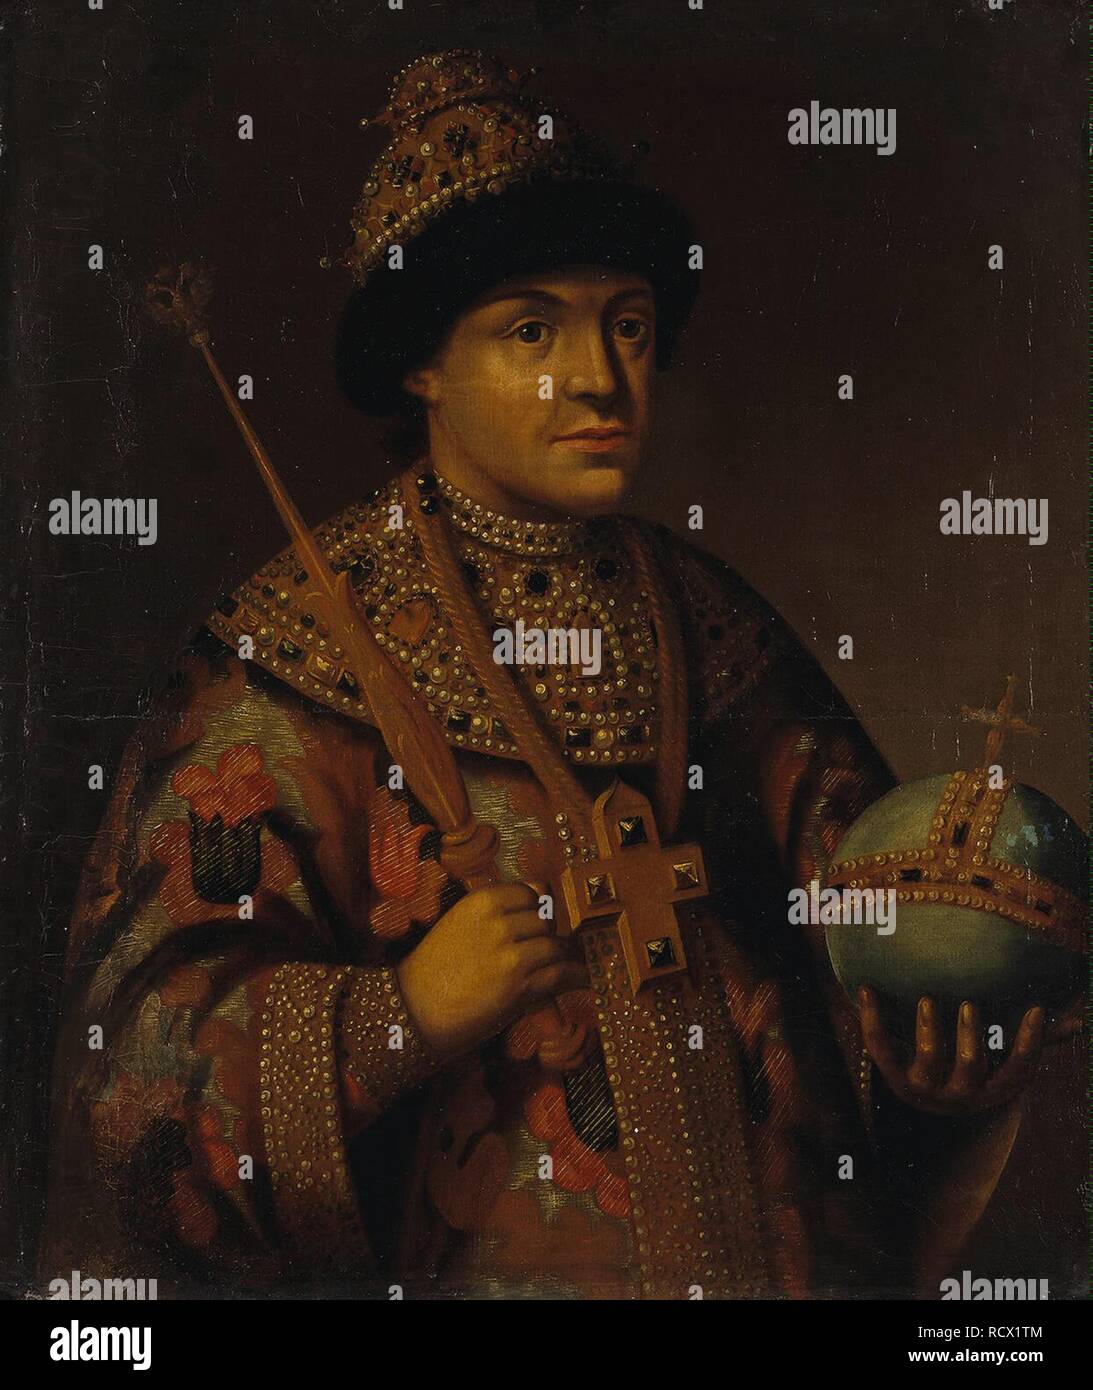 Portrait du Tsar Feodor (Theodore) III Alexeevich de la Russie (1661-1682). Musée : Etat de l'Ermitage, Saint-Pétersbourg. Auteur : anonyme. Banque D'Images